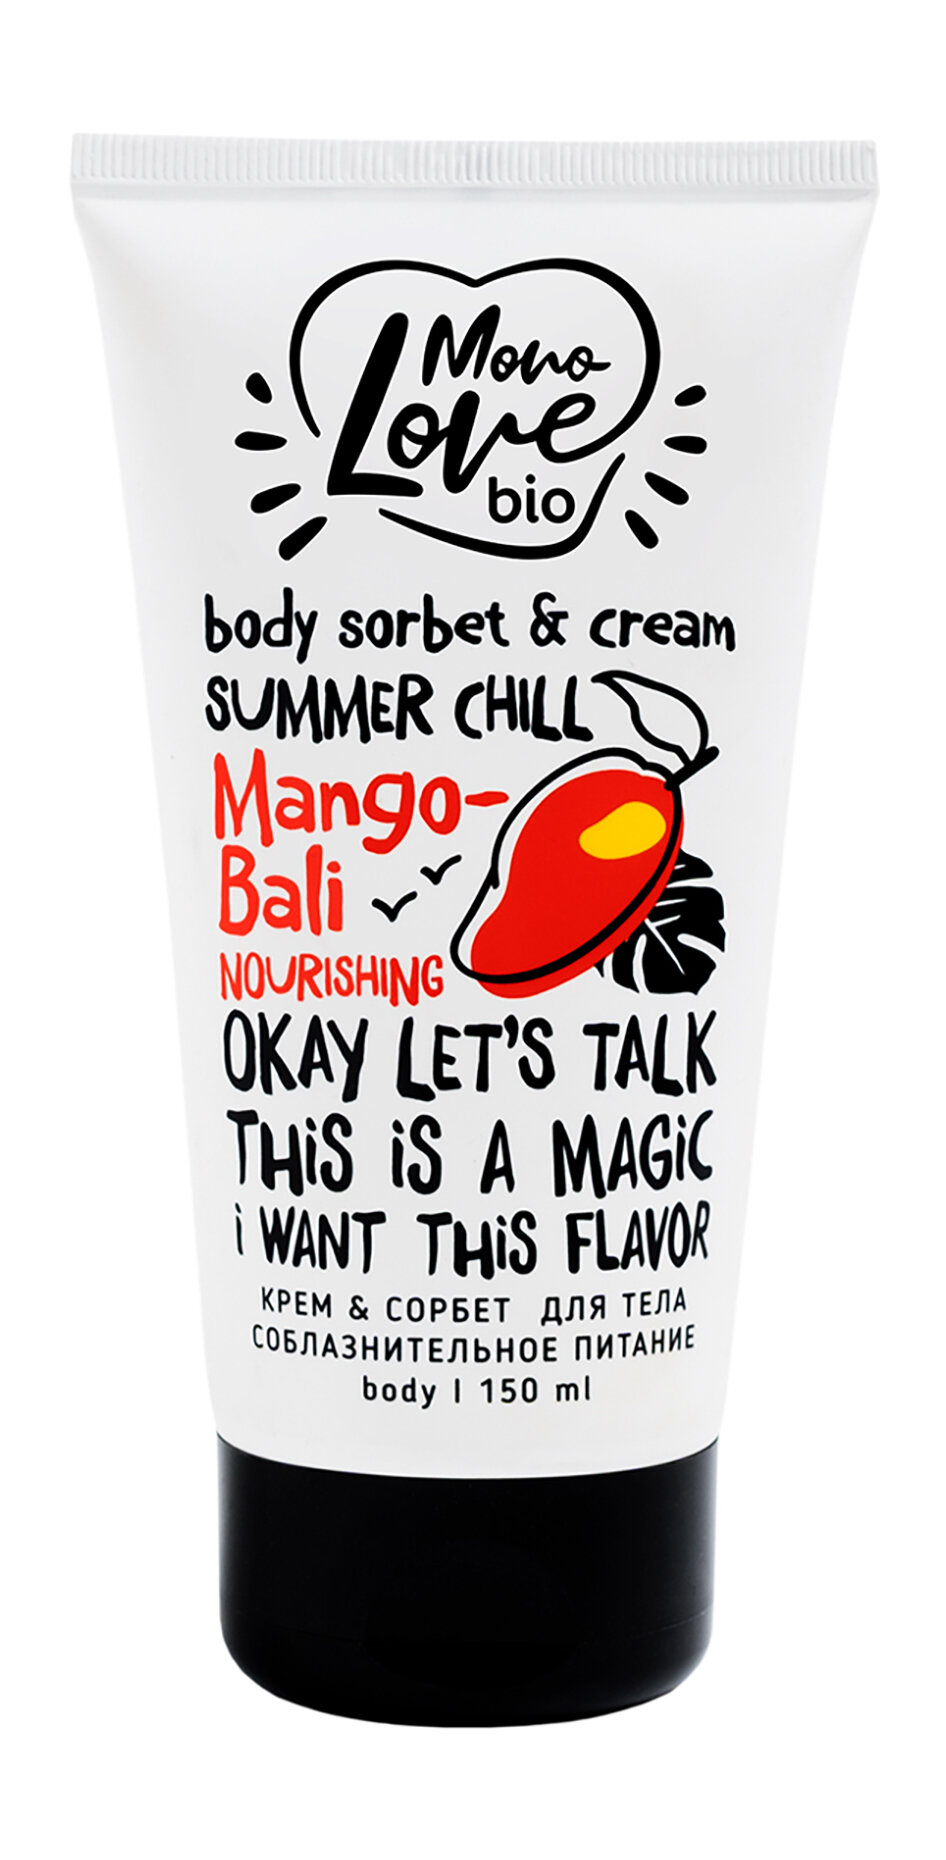 MONOLOVE BIO Крем-сорбет для тела соблазнительное питание Mango-Bali, 150 мл